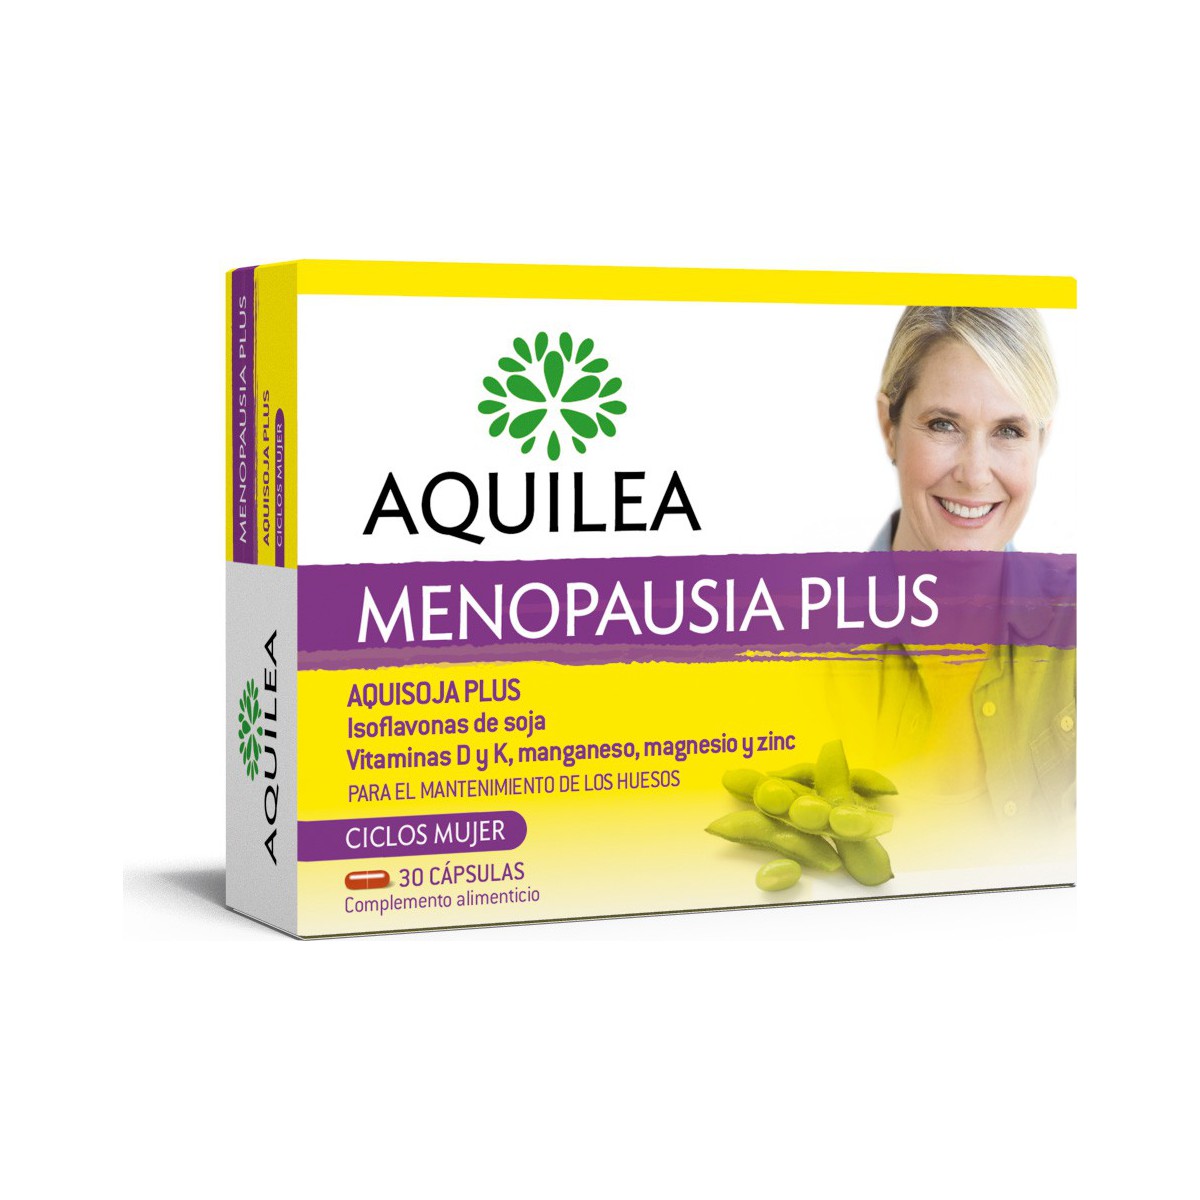 AQUISOJA PLUS 32 CAPS menopausea plus